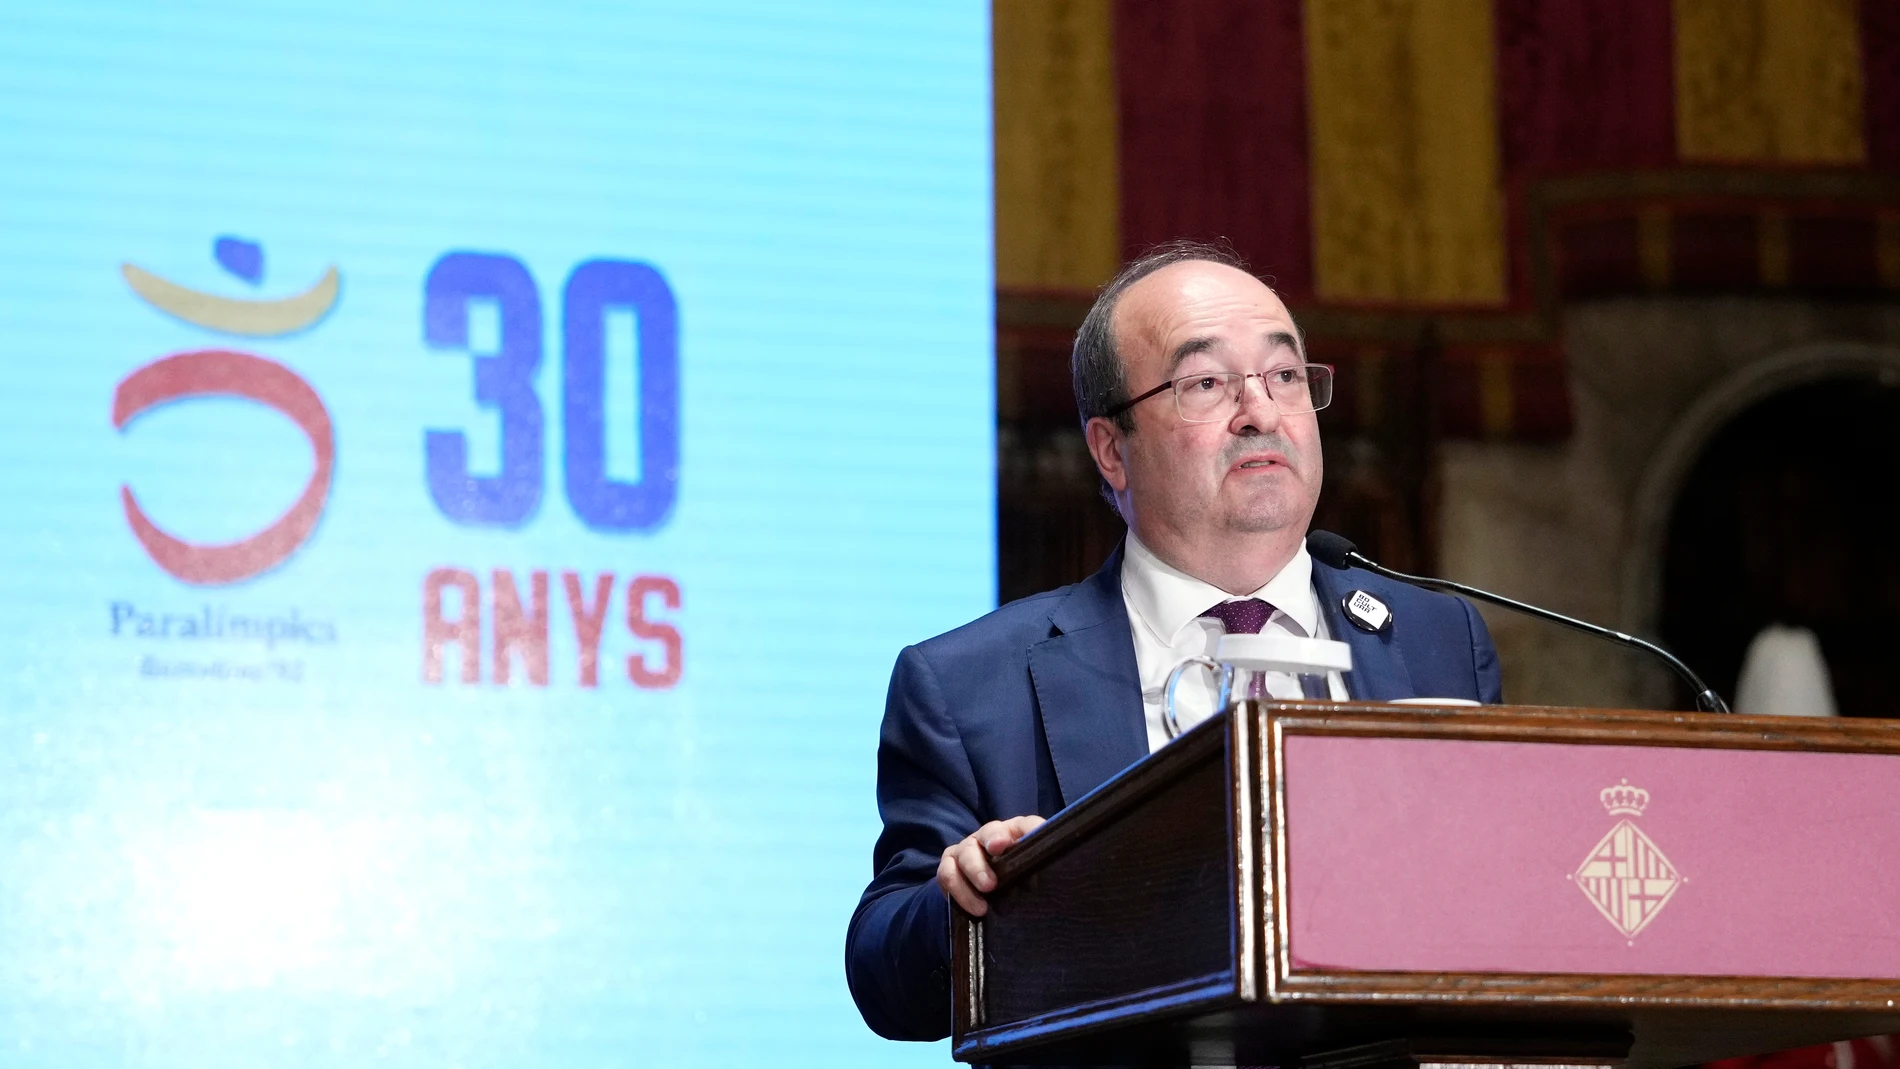 El ministro de Cultura, Miquel Iceta, durante el acto institucional del 30 aniversario de los Juegos Olímpicos de Barcelona 92, este jueves en el Ayuntamiento de Barcelona.